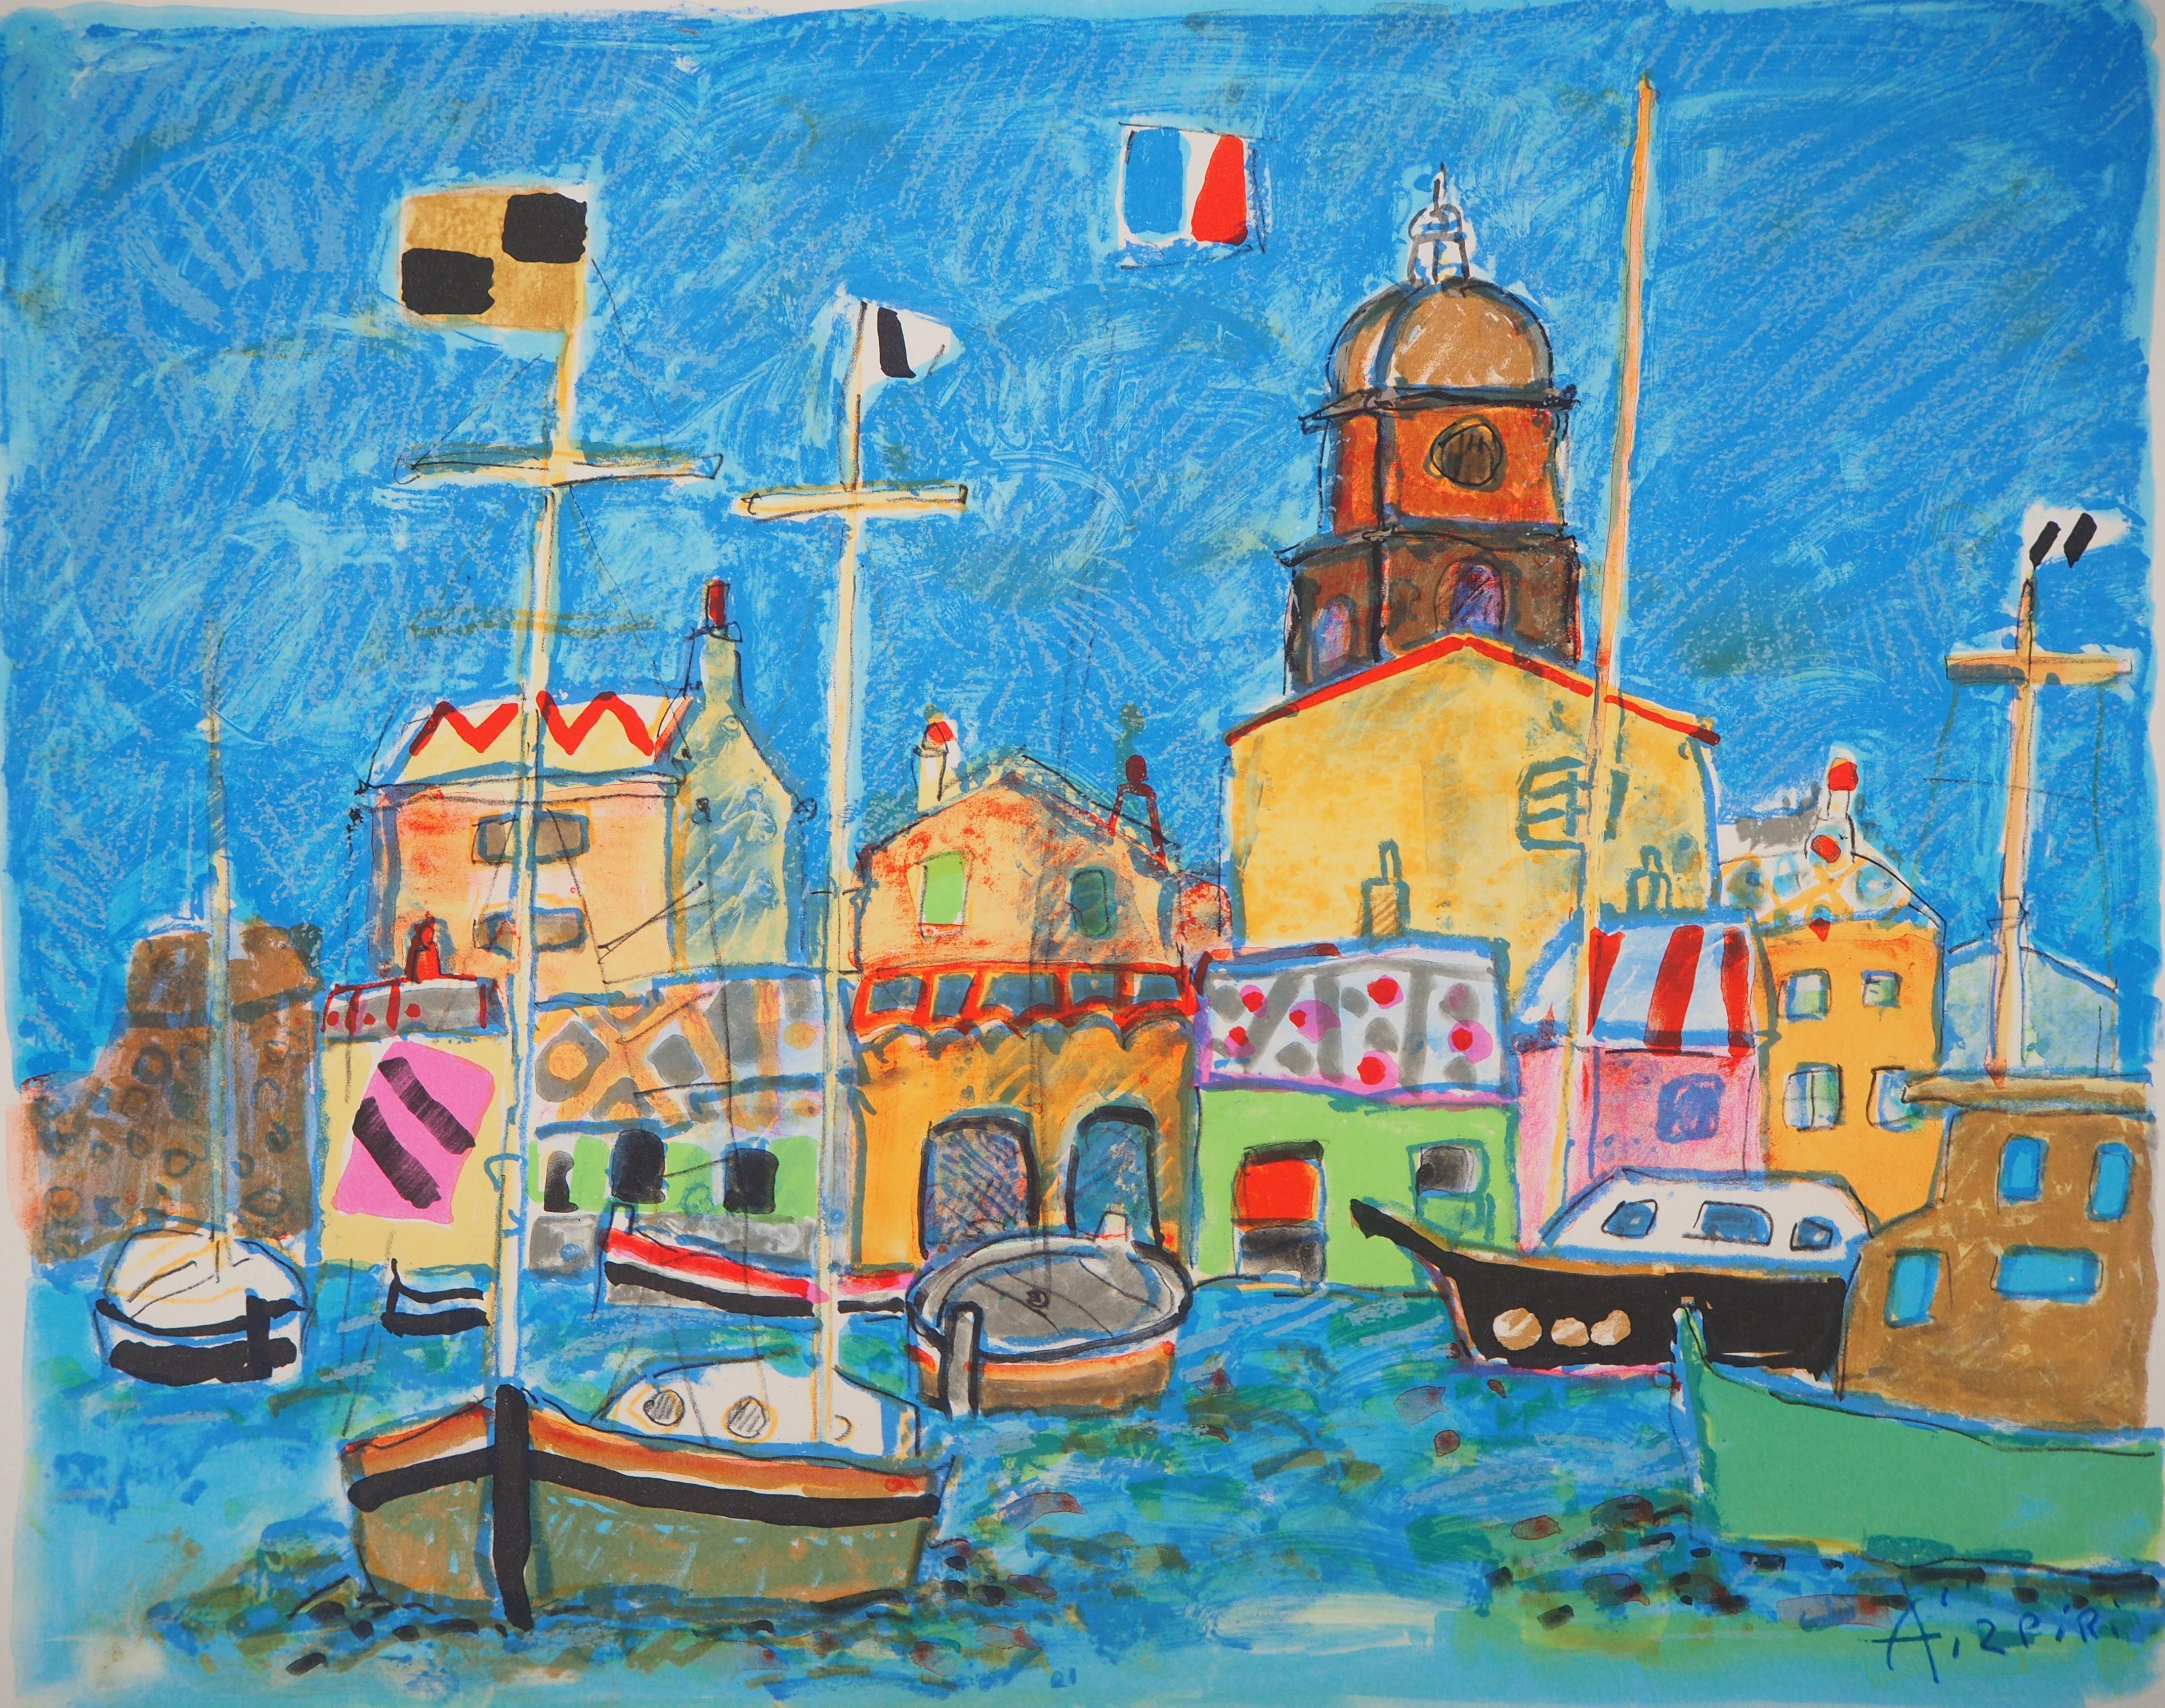 Saint Tropez : The Small Harbor - Original lithograph - Modern Print by Paul Aizpiri